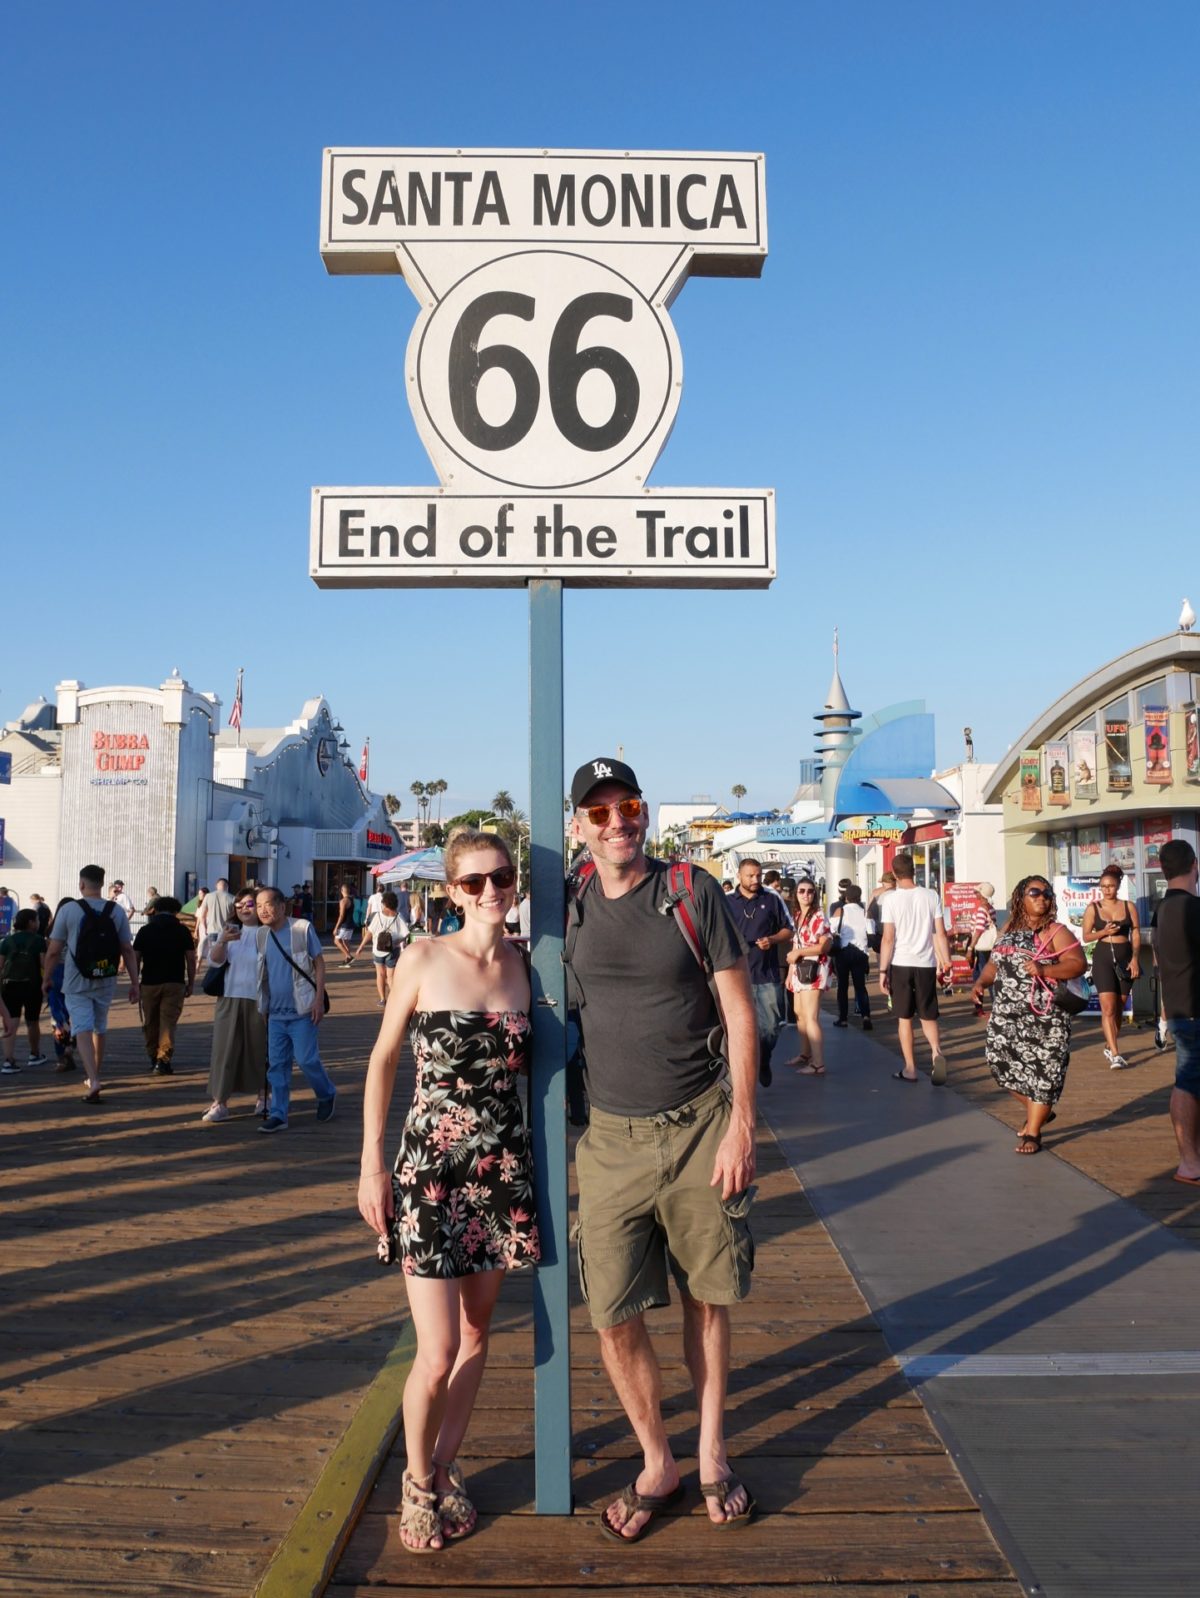 Route 66 ends Santa Monica Pier